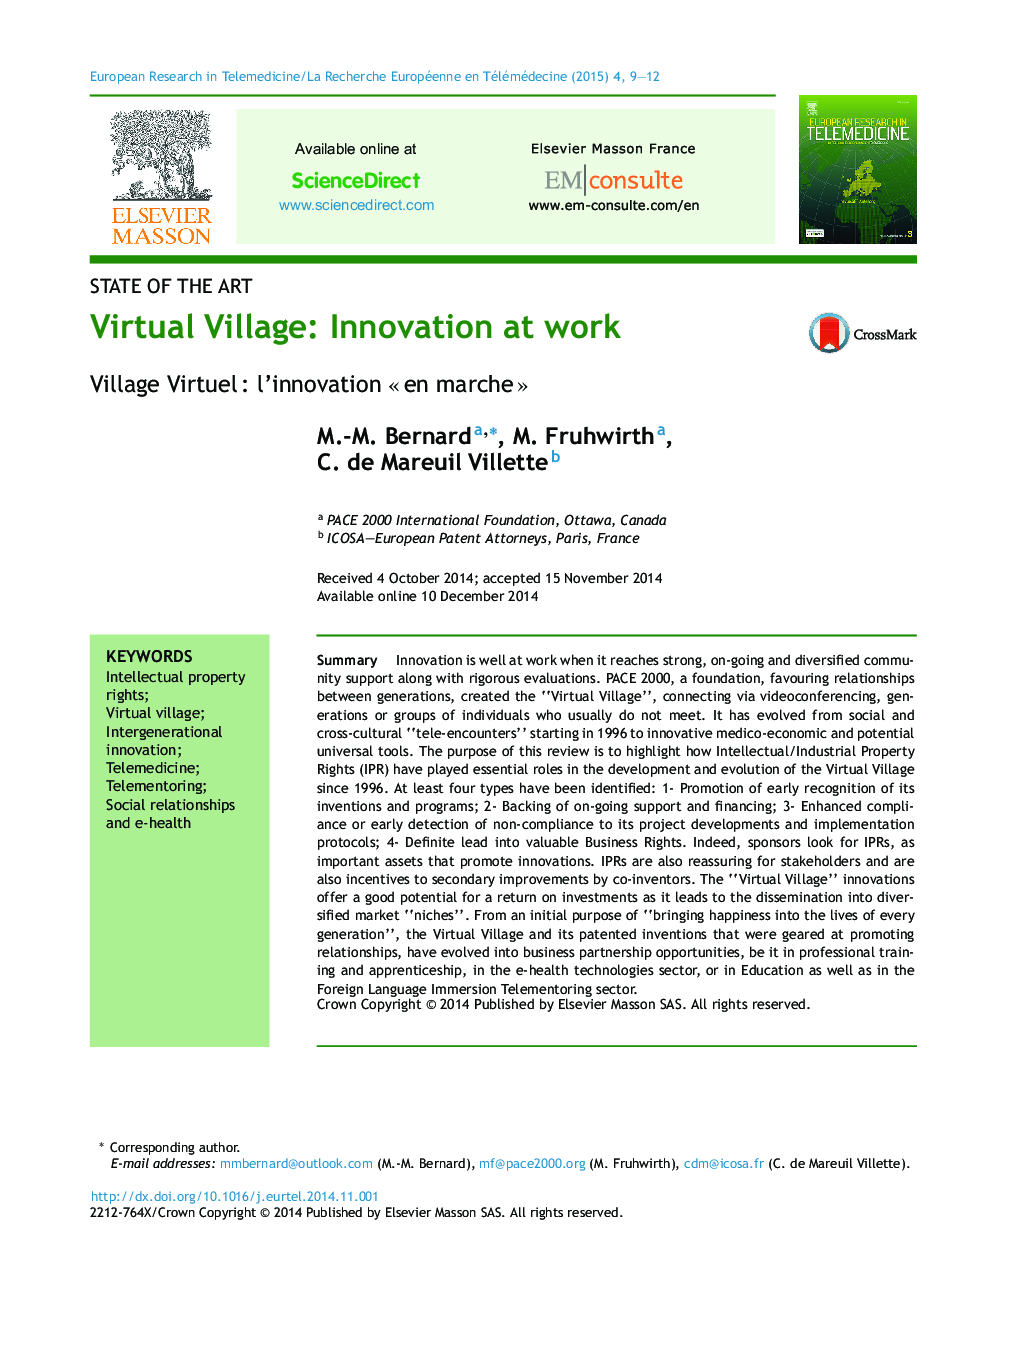 روستای مجازی: نوآوری در محل کار